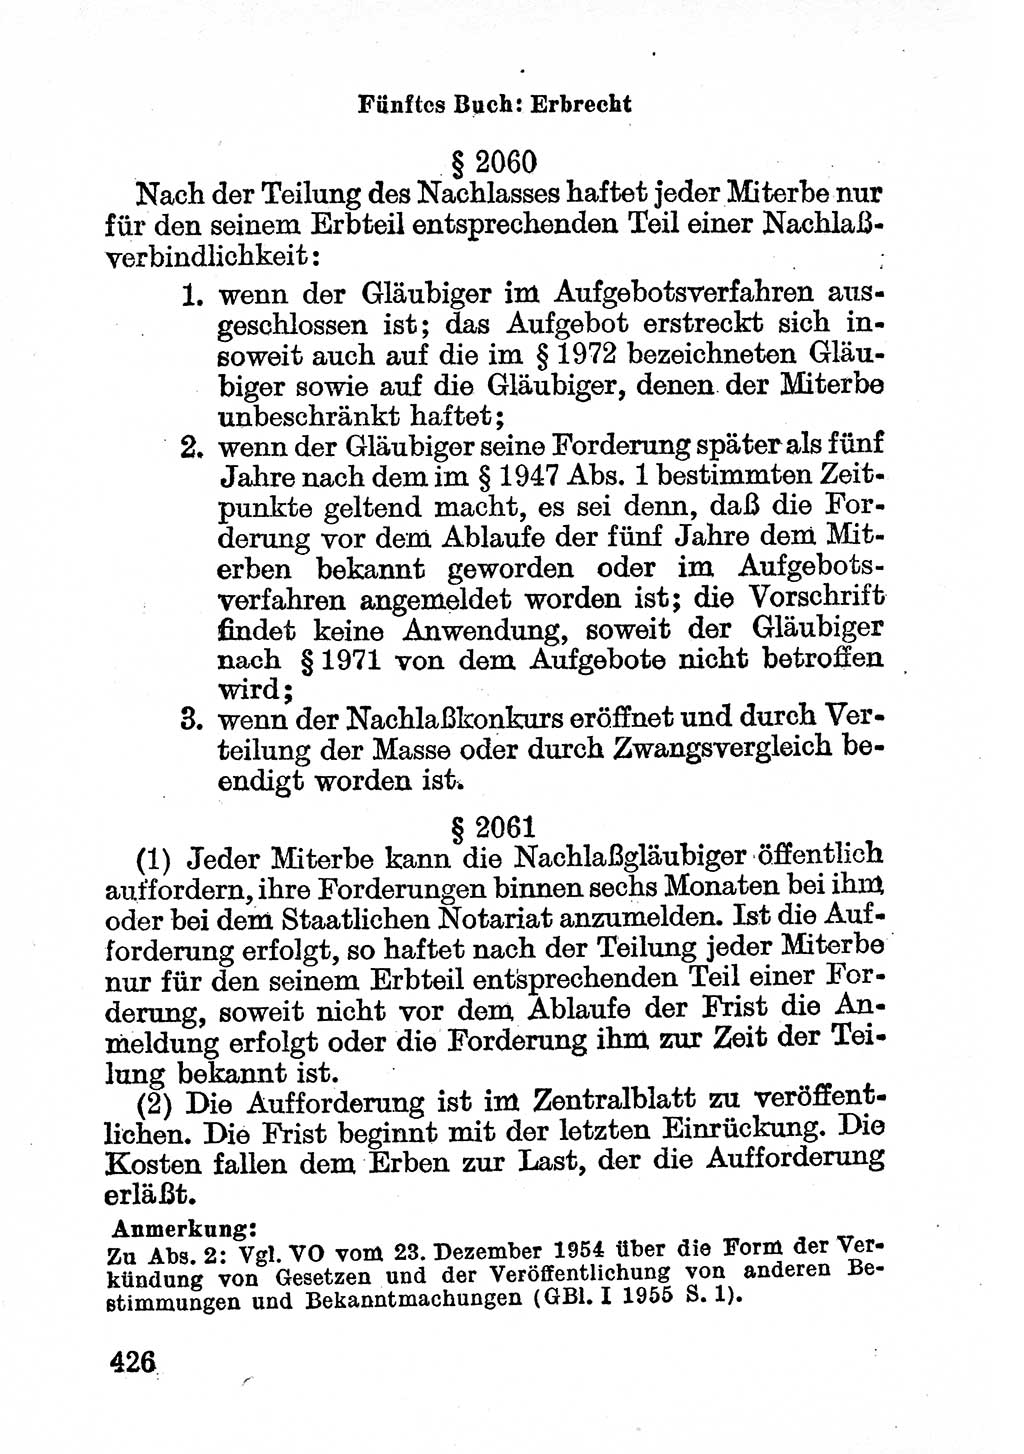 Bürgerliches Gesetzbuch (BGB) nebst wichtigen Nebengesetzen [Deutsche Demokratische Republik (DDR)] 1956, Seite 426 (BGB Nebenges. DDR 1956, S. 426)